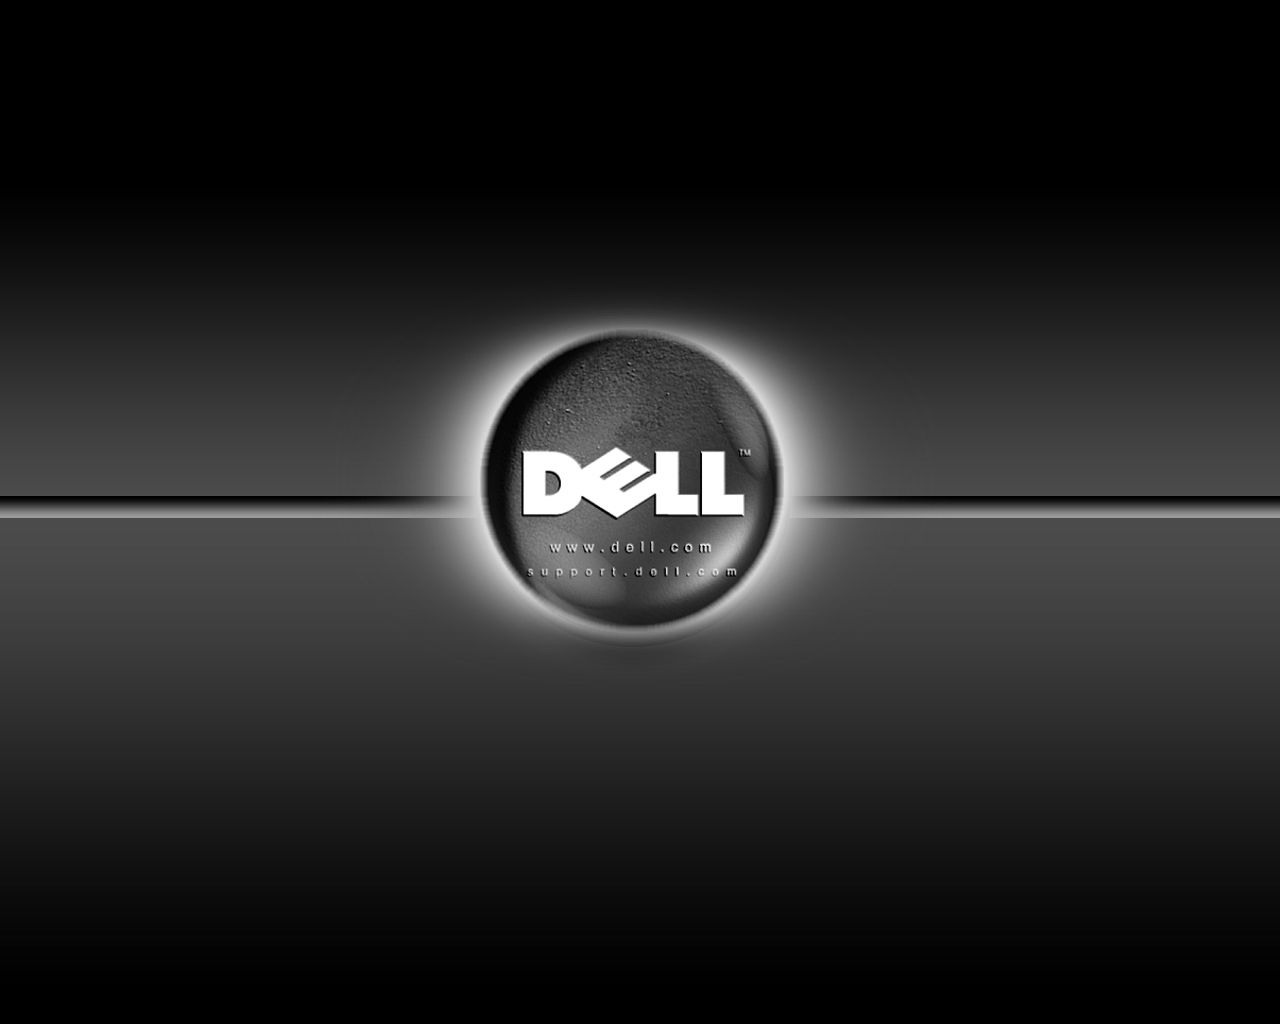 Dell Wallpaper, Dell Wallpaper Black